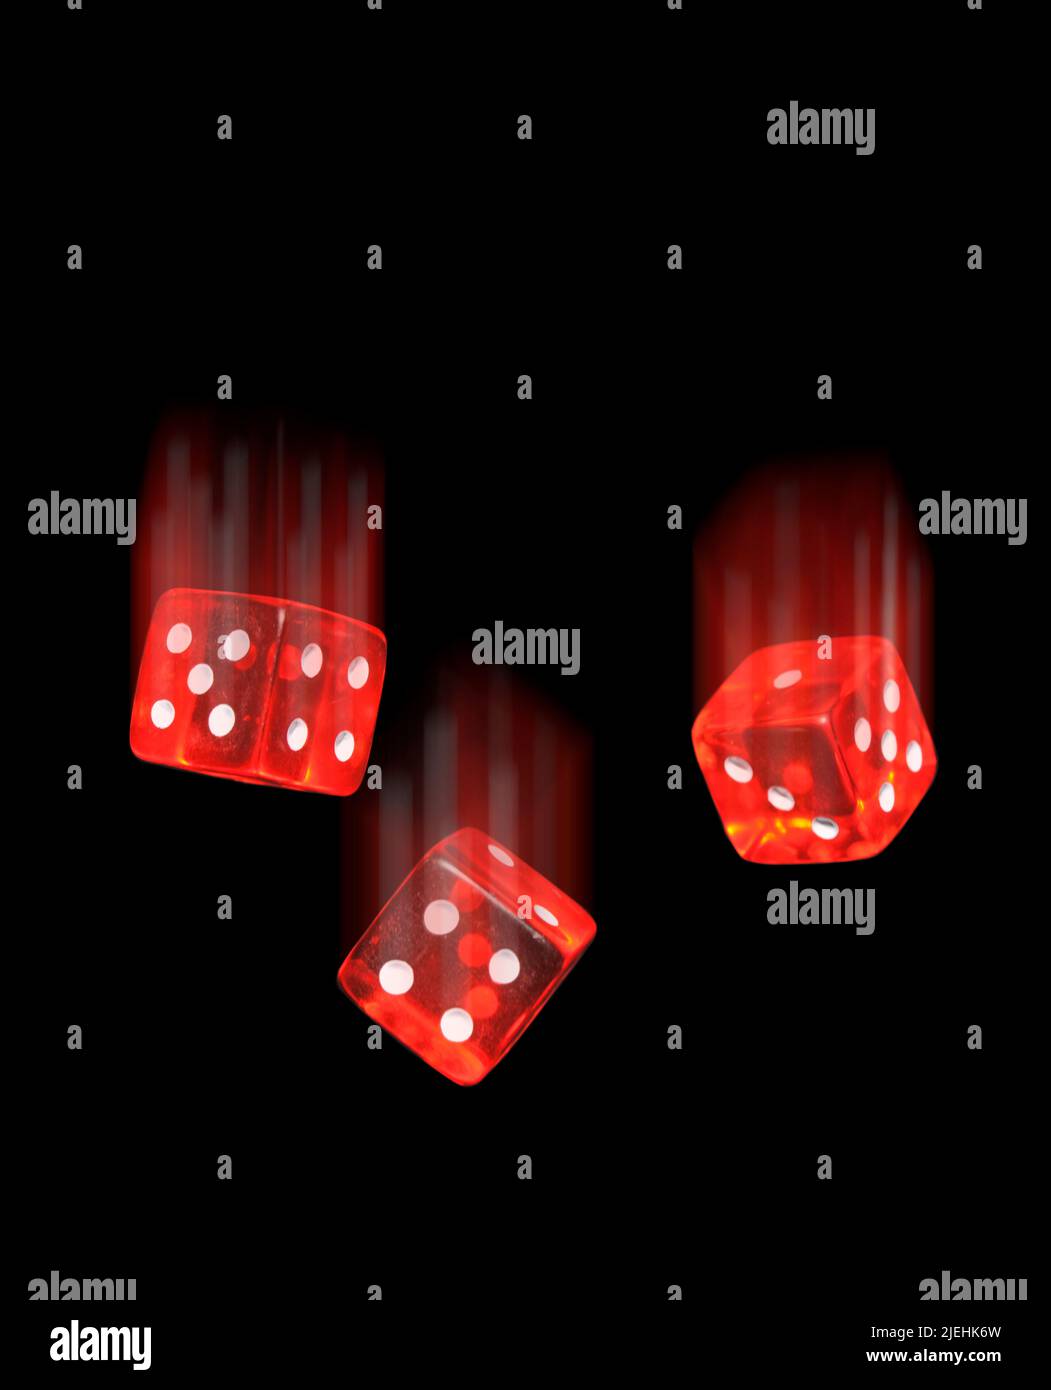 Fallende rote Glaswürfel, Glücksspiel, Poker, Spiel, Sucht, Spielsucht, fallen, fallende, Glas, Glaswürfel, durchsichtig, durchsichtige, rot, rote, Po Stock Photo